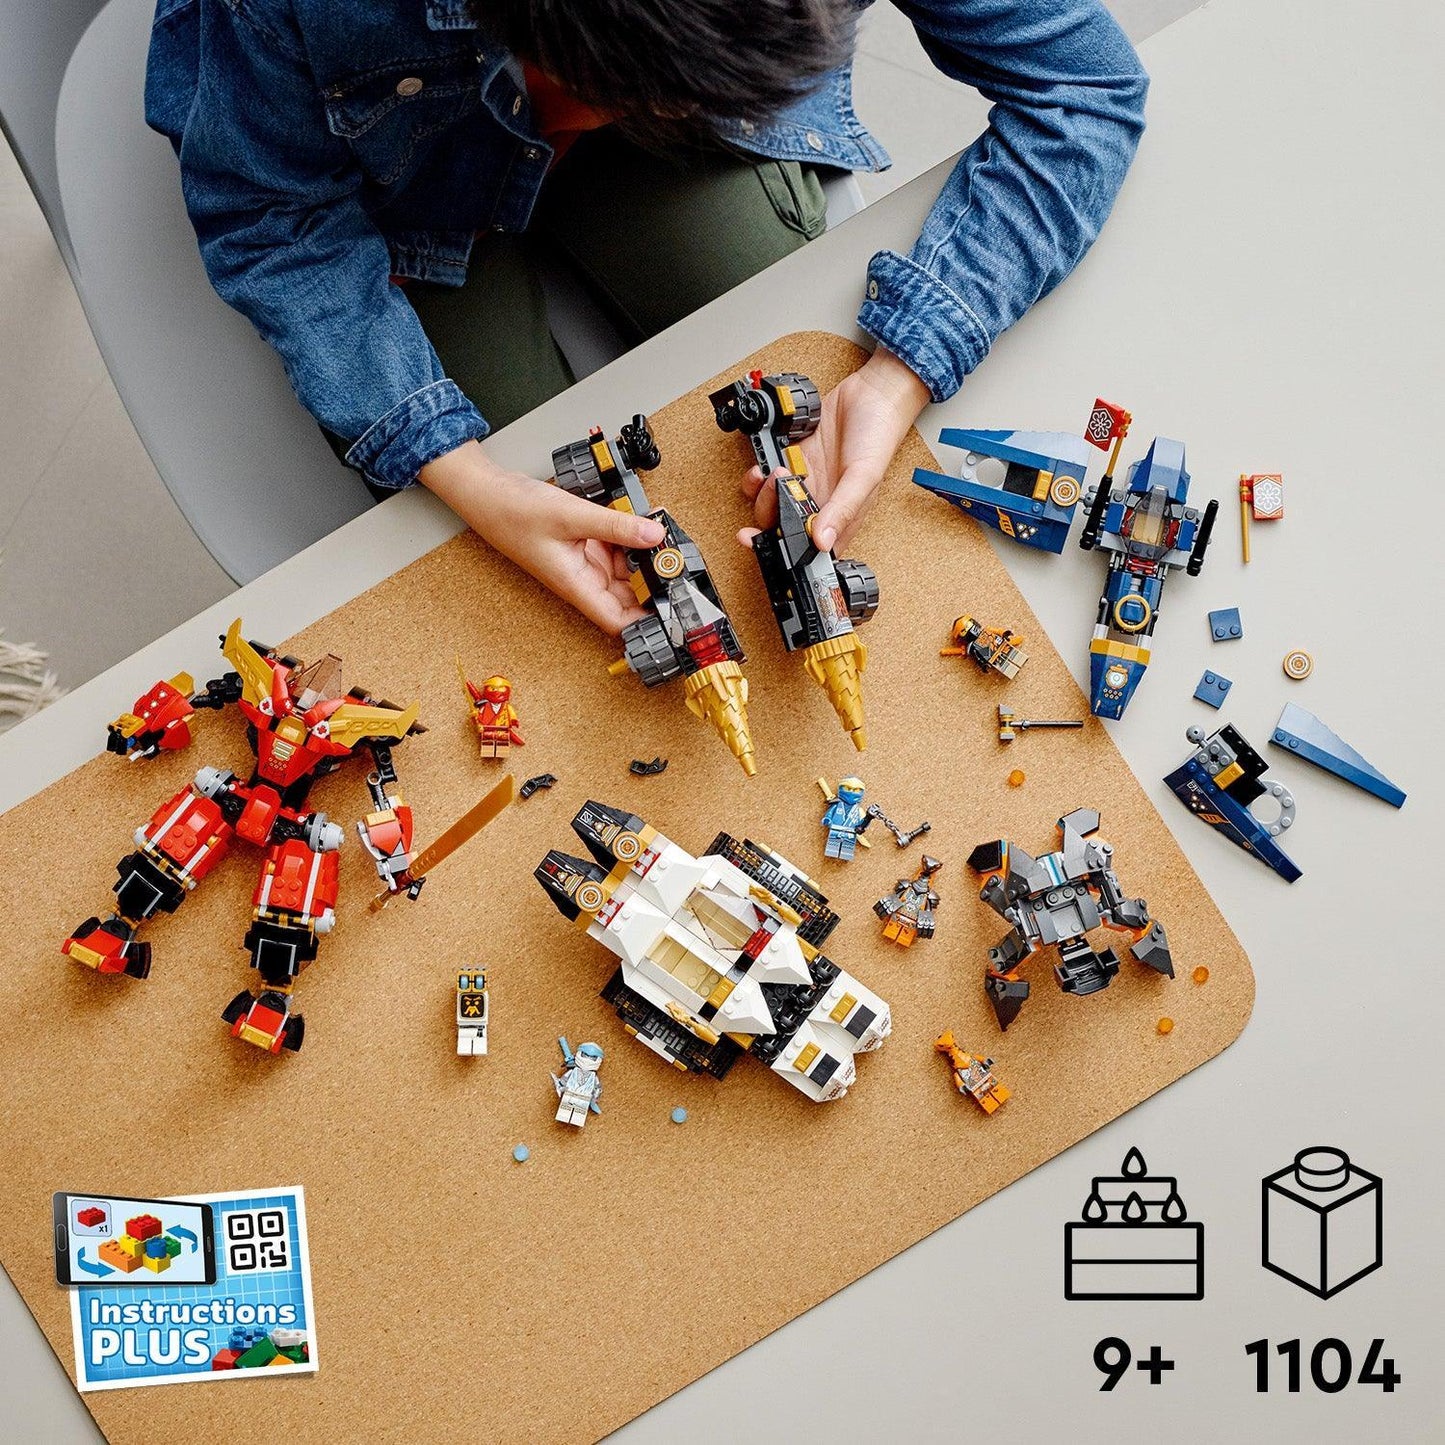 LEGO Ninjago Combo Mech 71765 Ninjago | 2TTOYS ✓ Official shop<br>